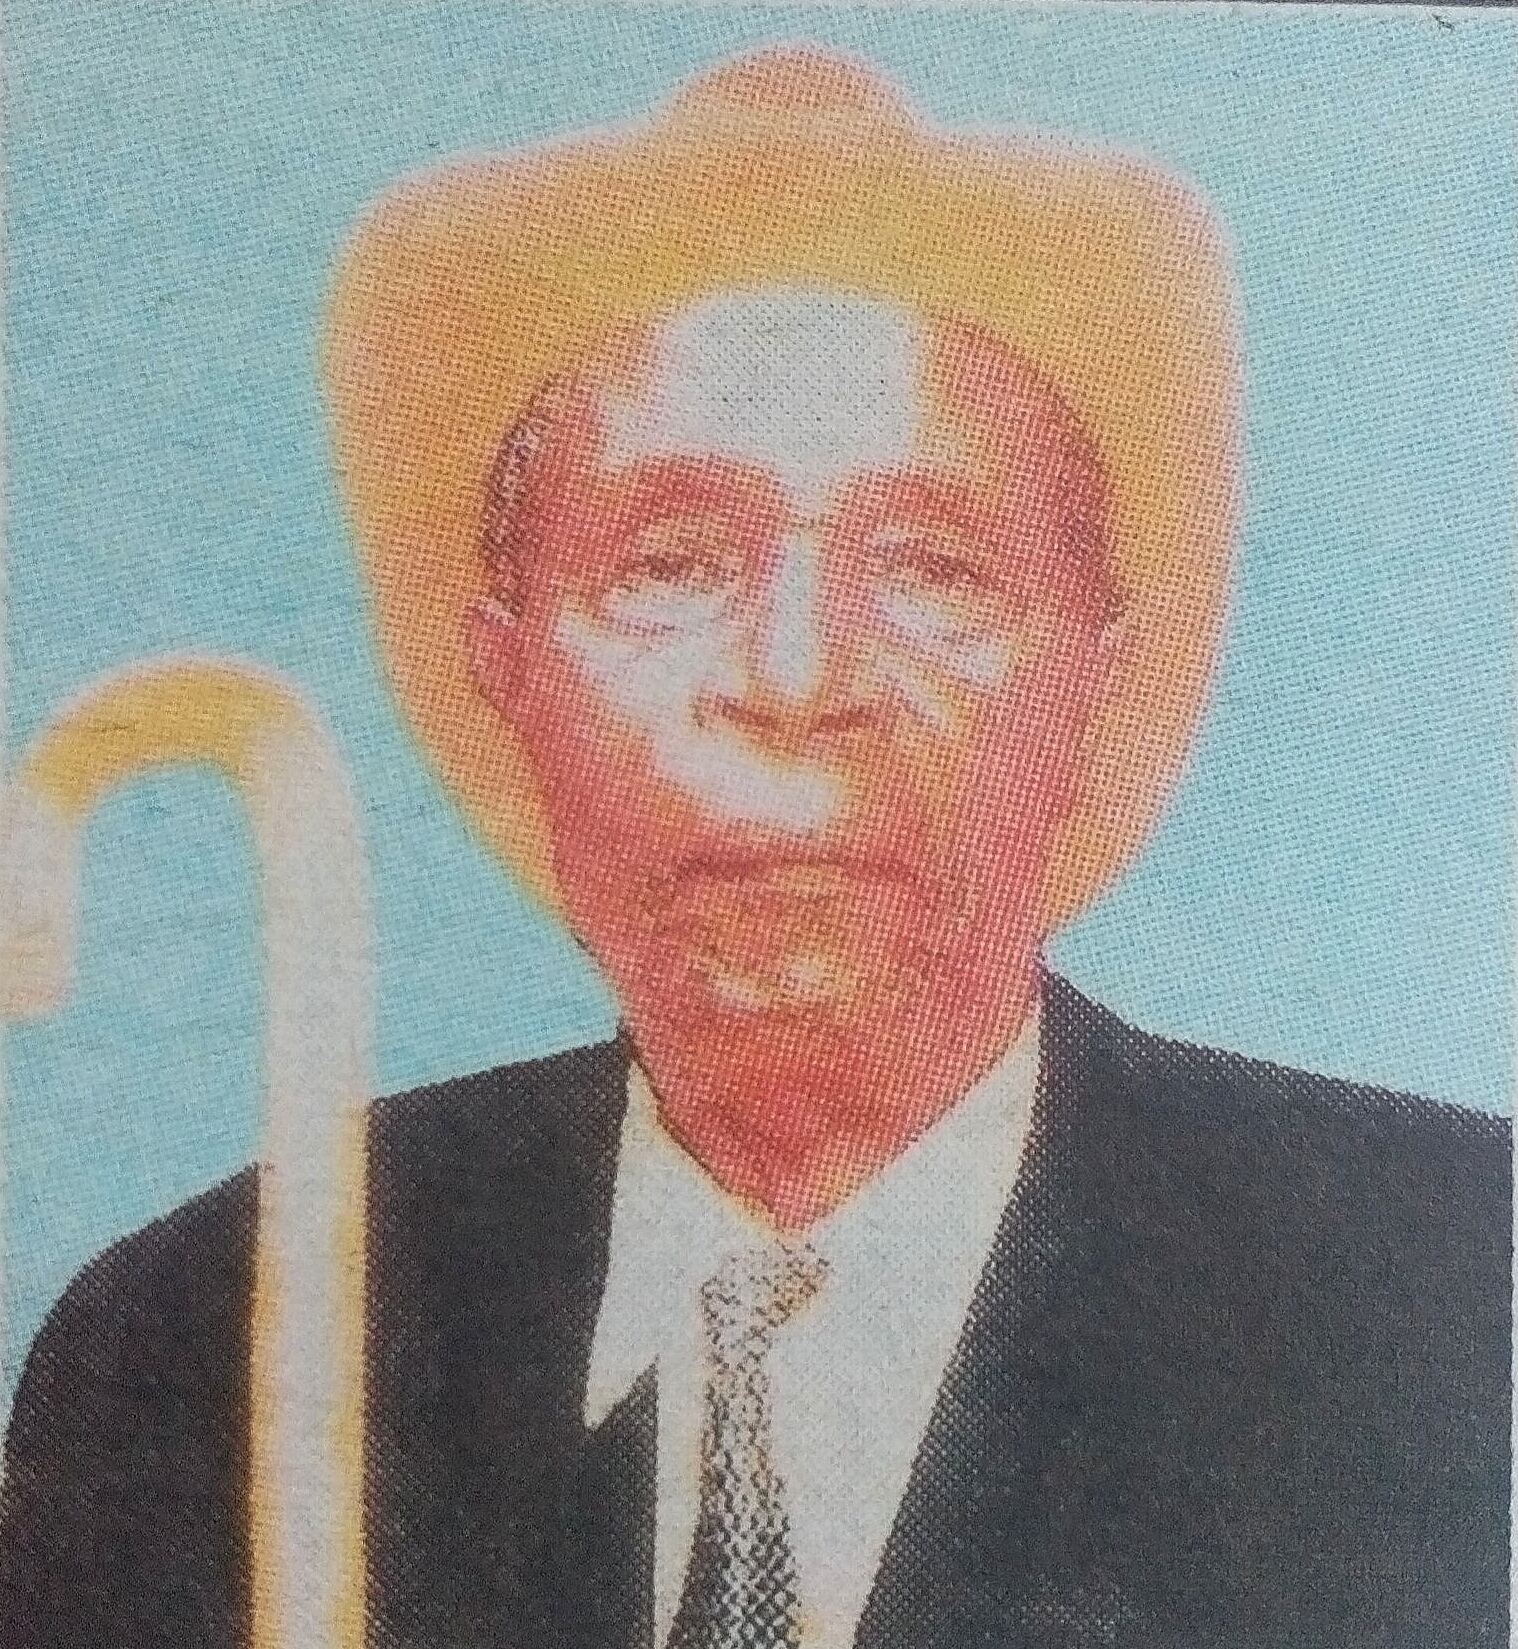 Obituary Image of Mzee Jason Nyariki Nyanuga